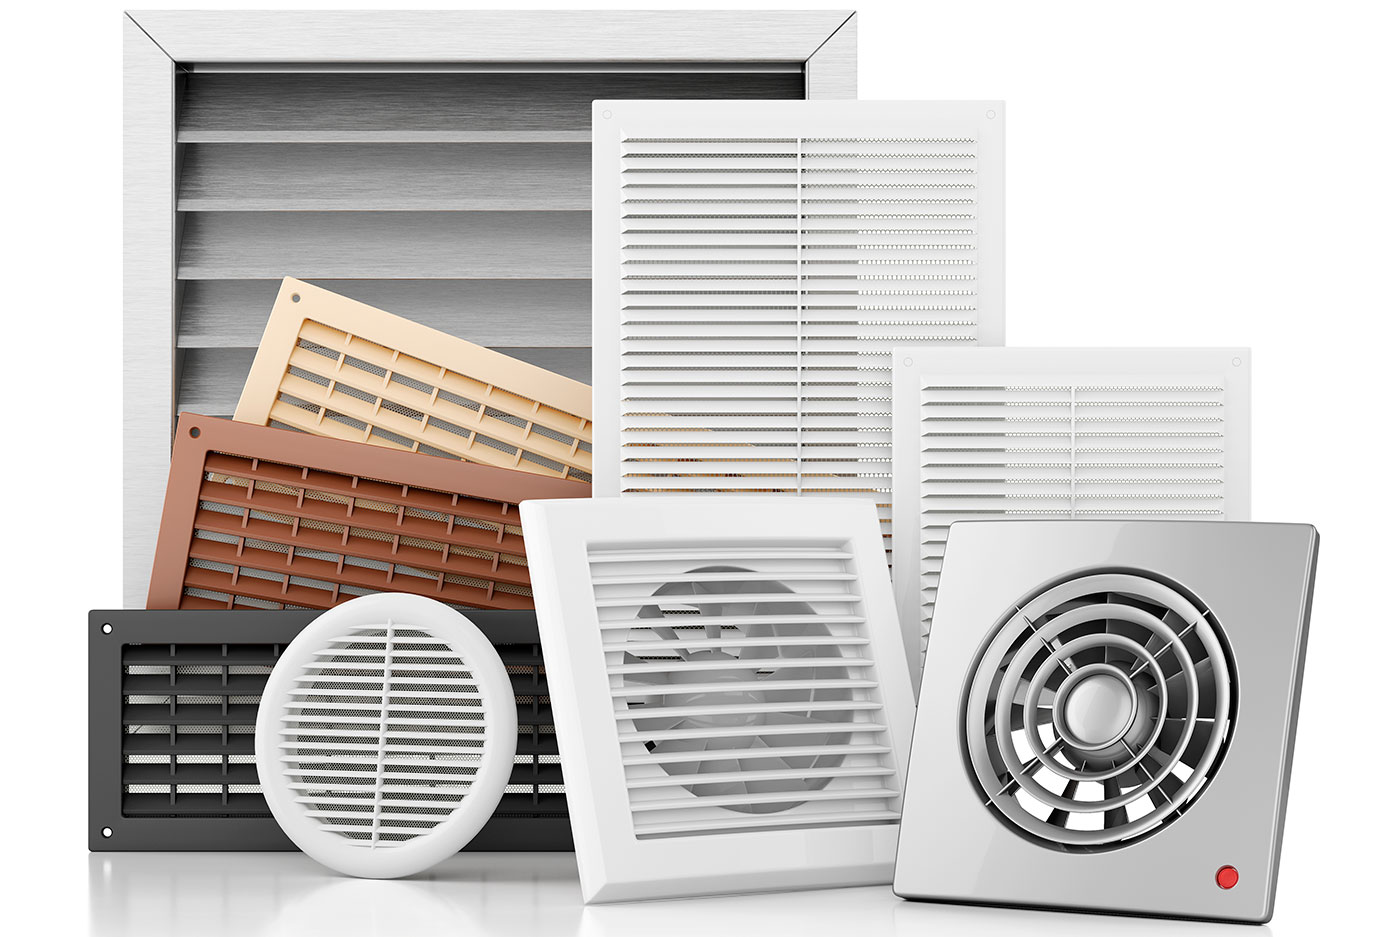 Son necesarias las rejillas de ventilación para el hogar? - Bropro